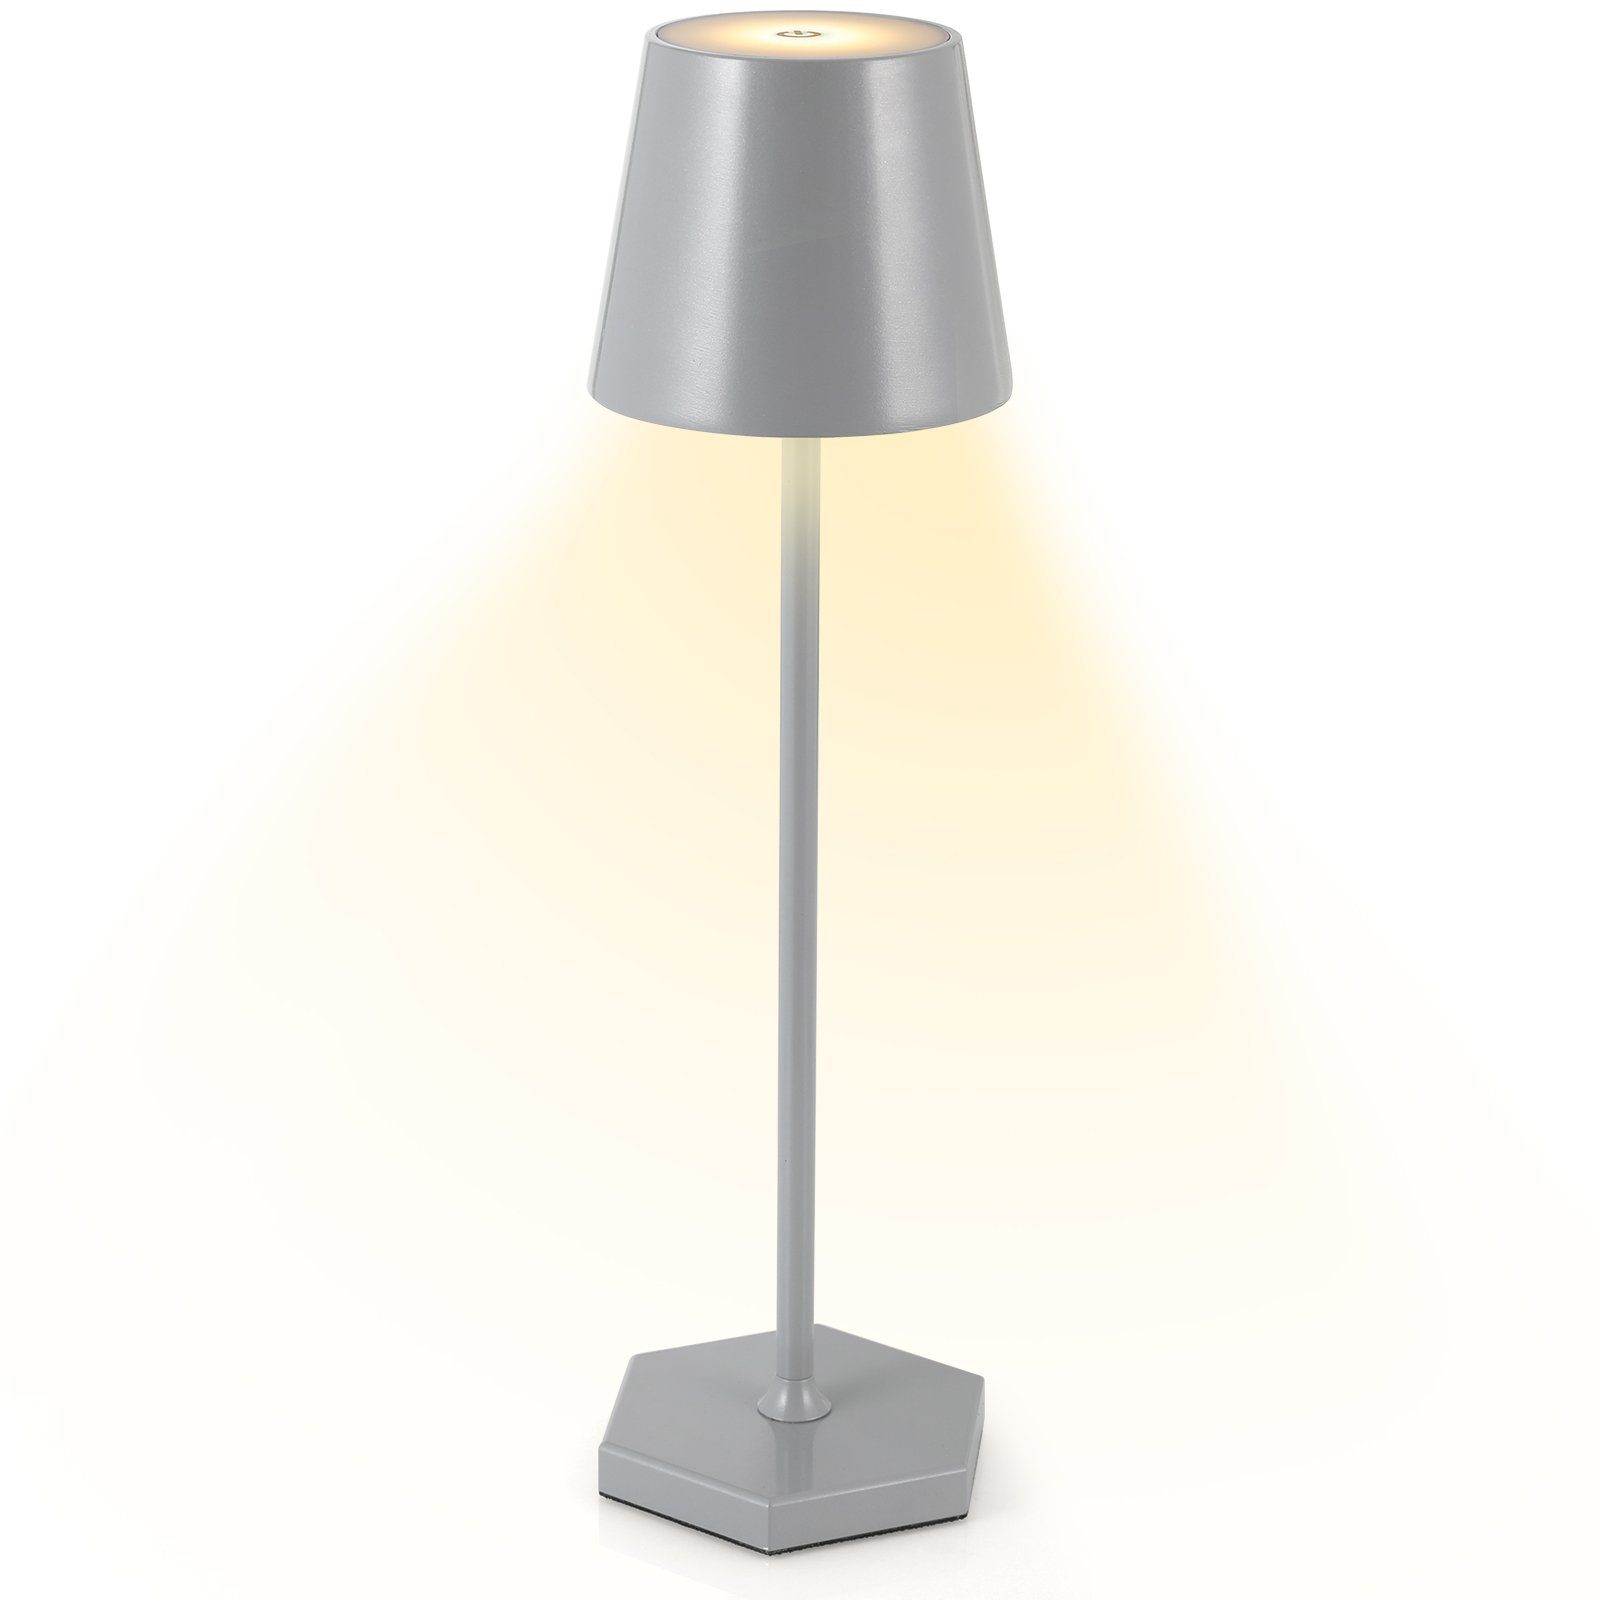 TLGREEN Tischlampe Grau Dimmbare,Nachttischlampe,300LM Tischlampe Schreibtischlampe Kabellos,LED Akku